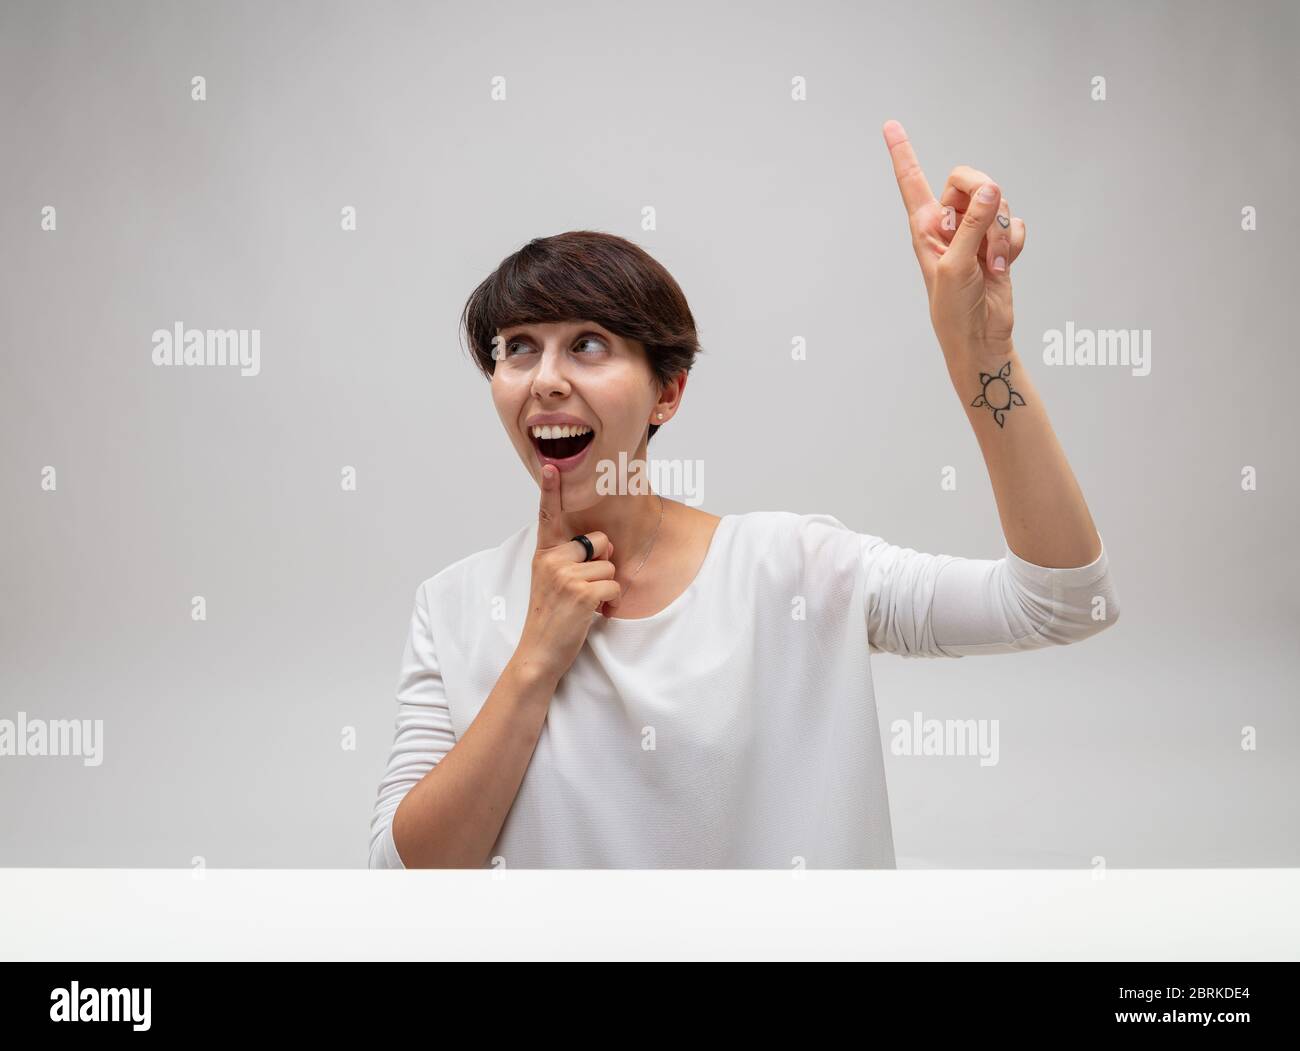 Femme ayant un moment eureka comme elle résout un problème ou a une idée d'inspiration pointant au-dessus de sa tête avec son doigt à sa bouche avec une animation Banque D'Images